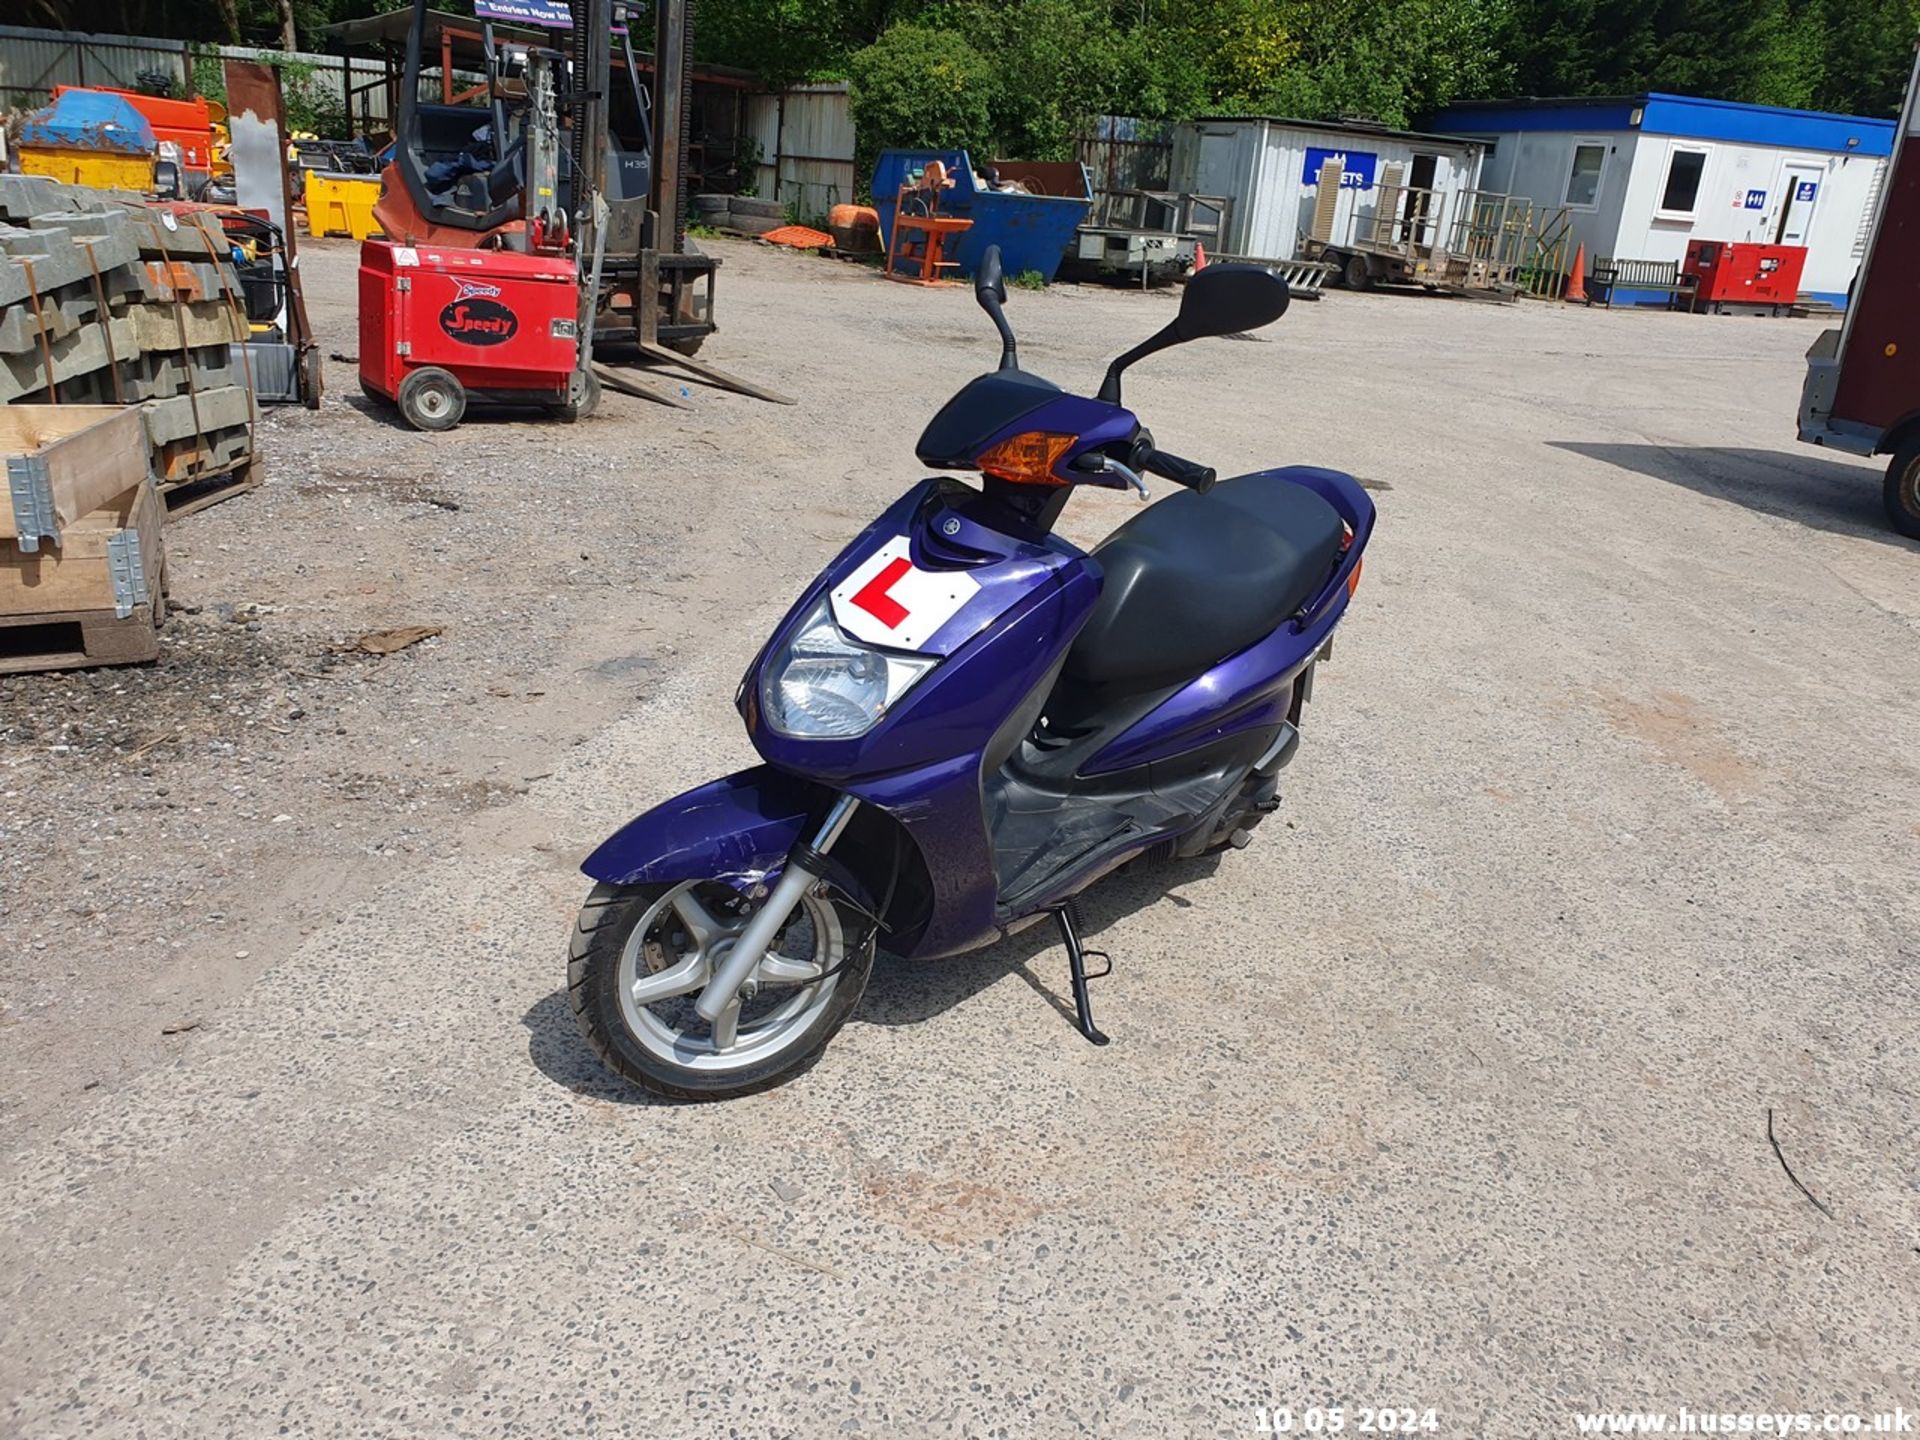 05/54 YAMAHA NXC 125 CYGNUS - 124cc Motorcycle (Blue, 18k) - Image 7 of 19